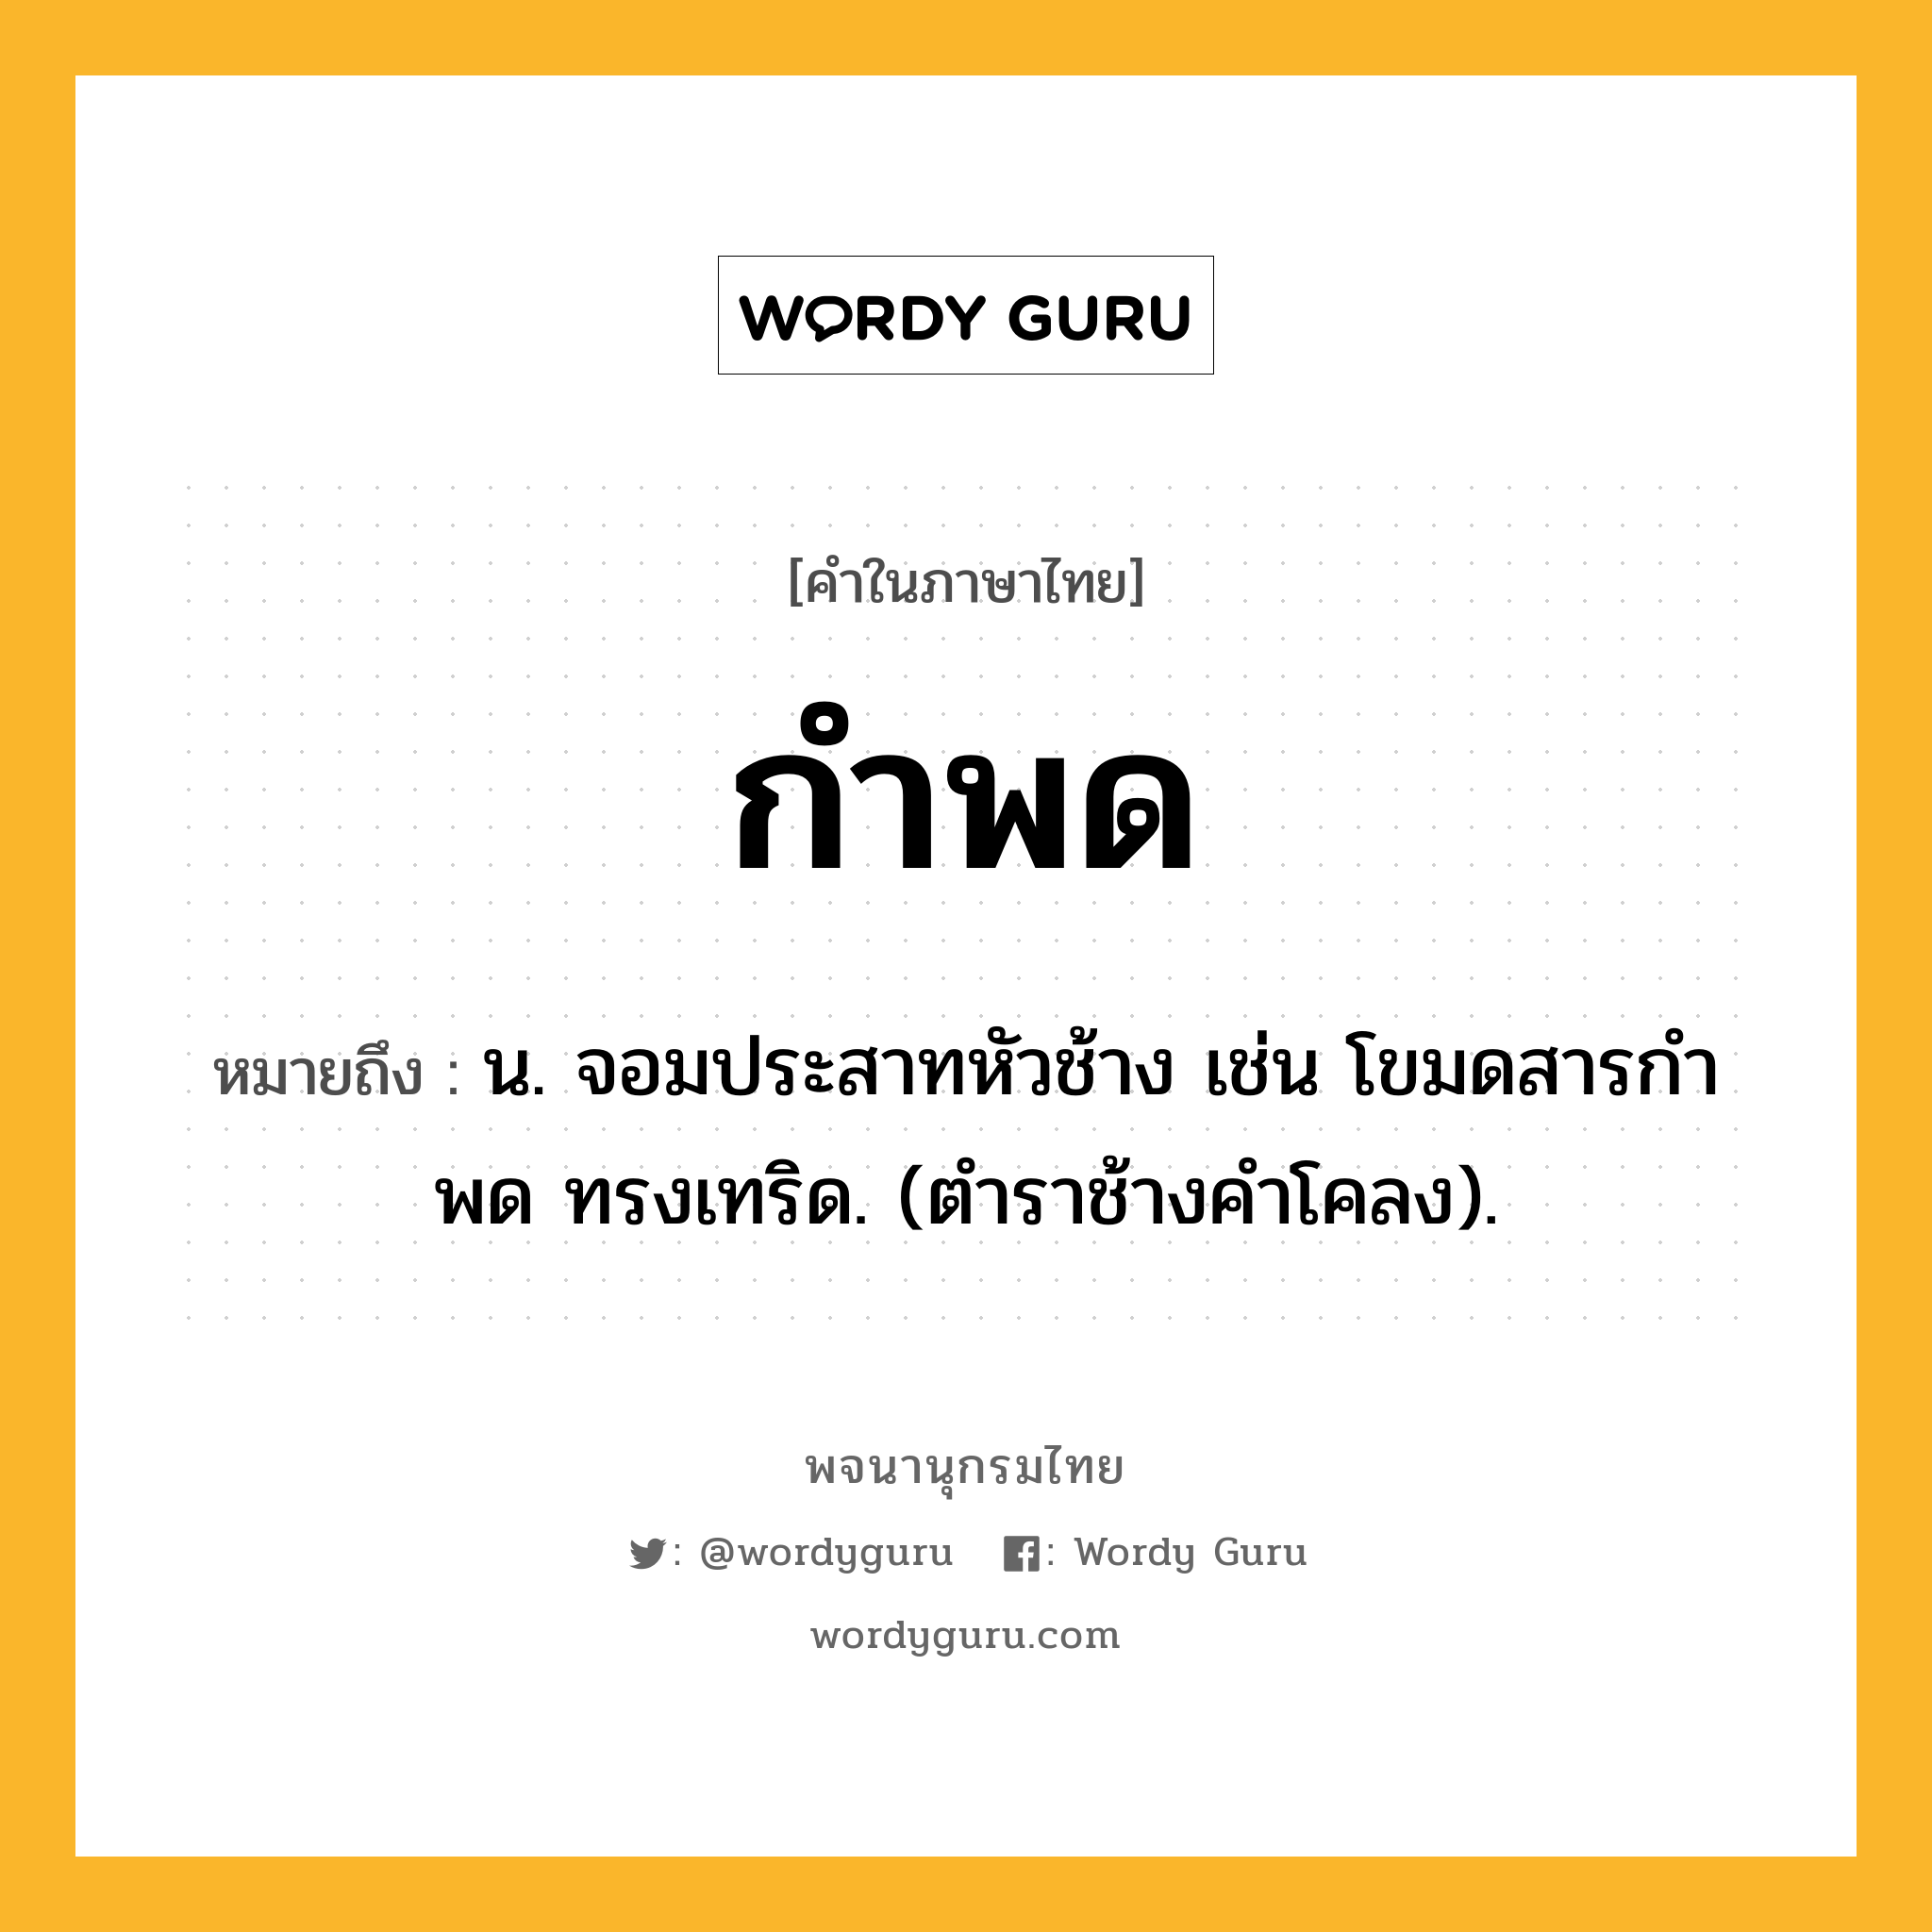 กำพด ความหมาย หมายถึงอะไร?, คำในภาษาไทย กำพด หมายถึง น. จอมประสาทหัวช้าง เช่น โขมดสารกําพด ทรงเทริด. (ตําราช้างคําโคลง).